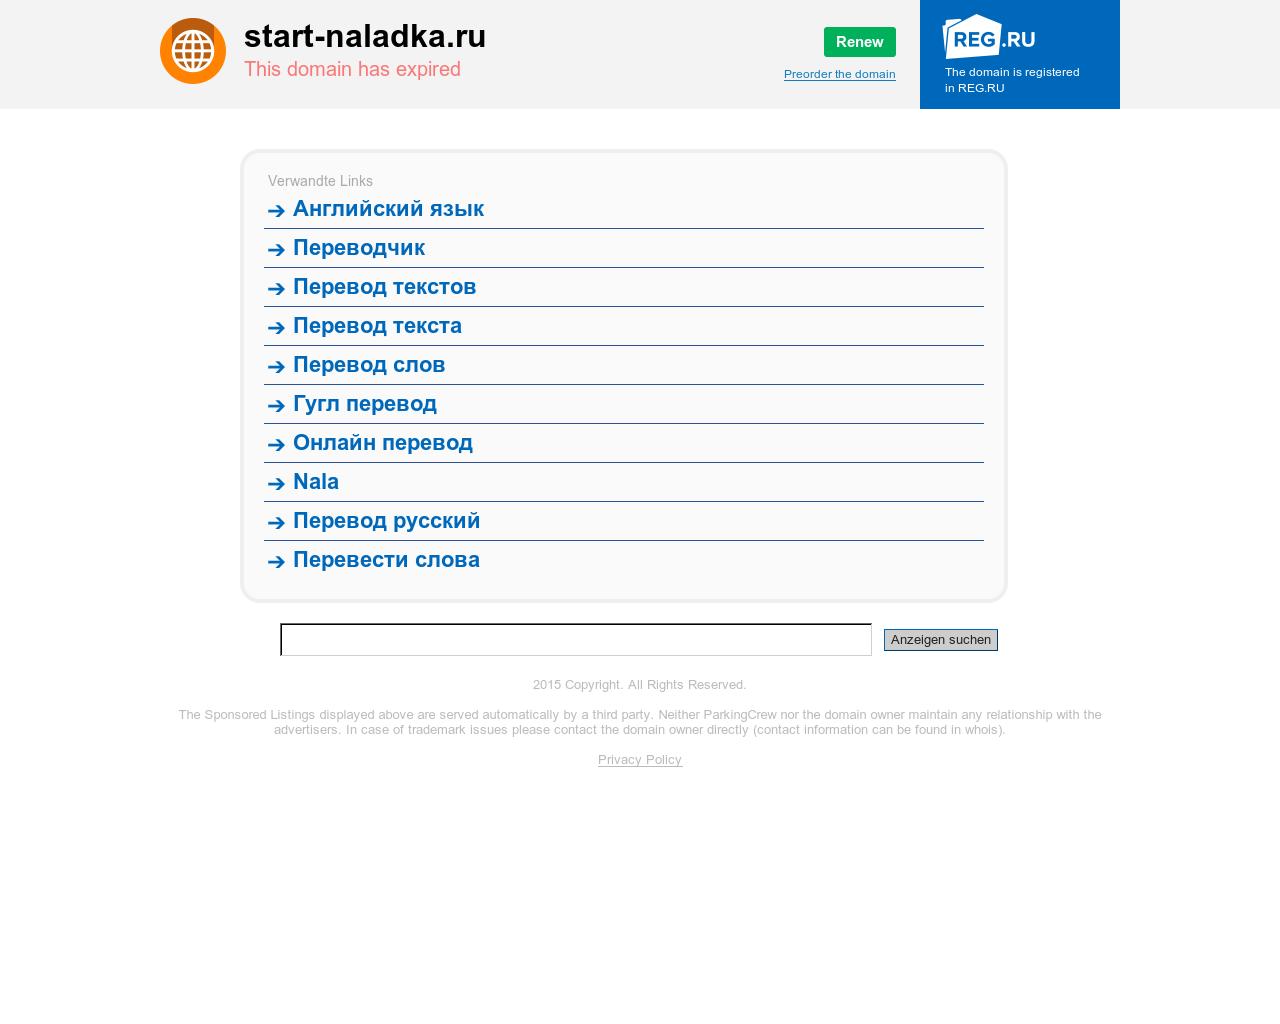 Изображение сайта start-naladka.ru в разрешении 1280x1024